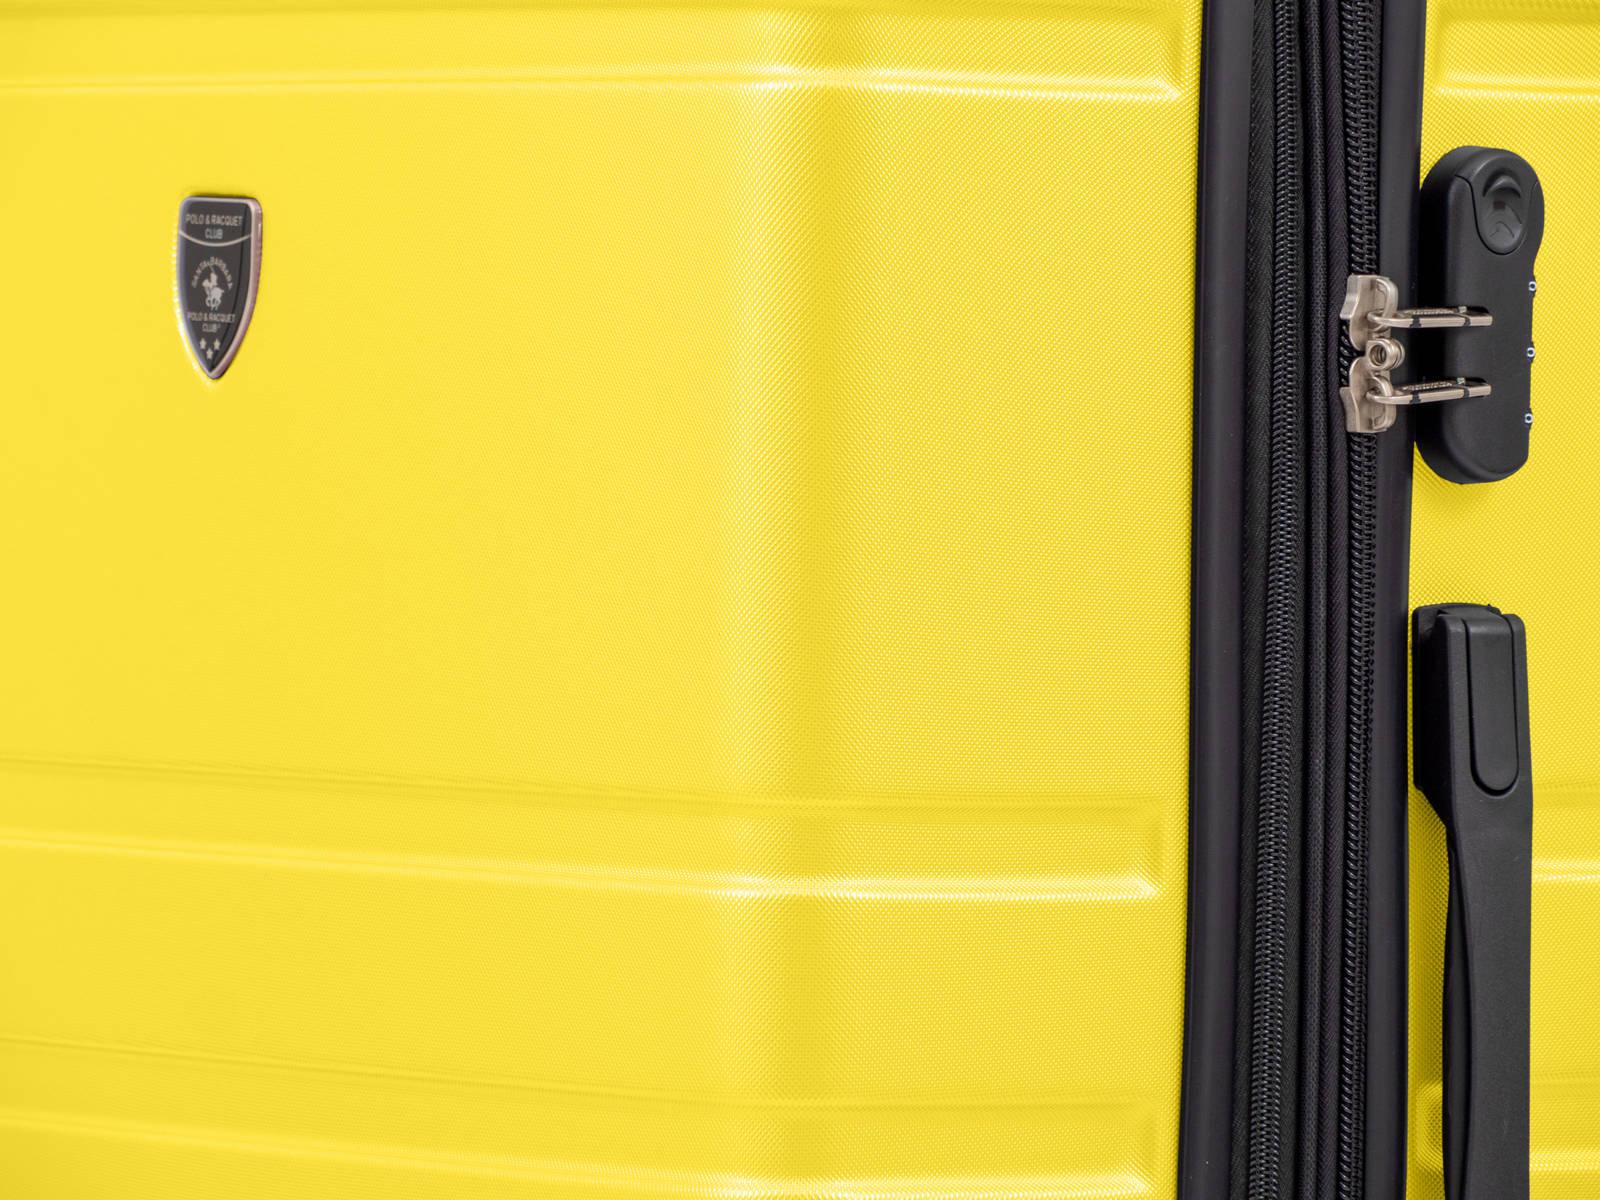 SANTA BARBARA POLO & RAQUET CLUB - מזוודה קשיחה בינונית 24" דגם 1807 בצבע צהוב - MASHBIR//365